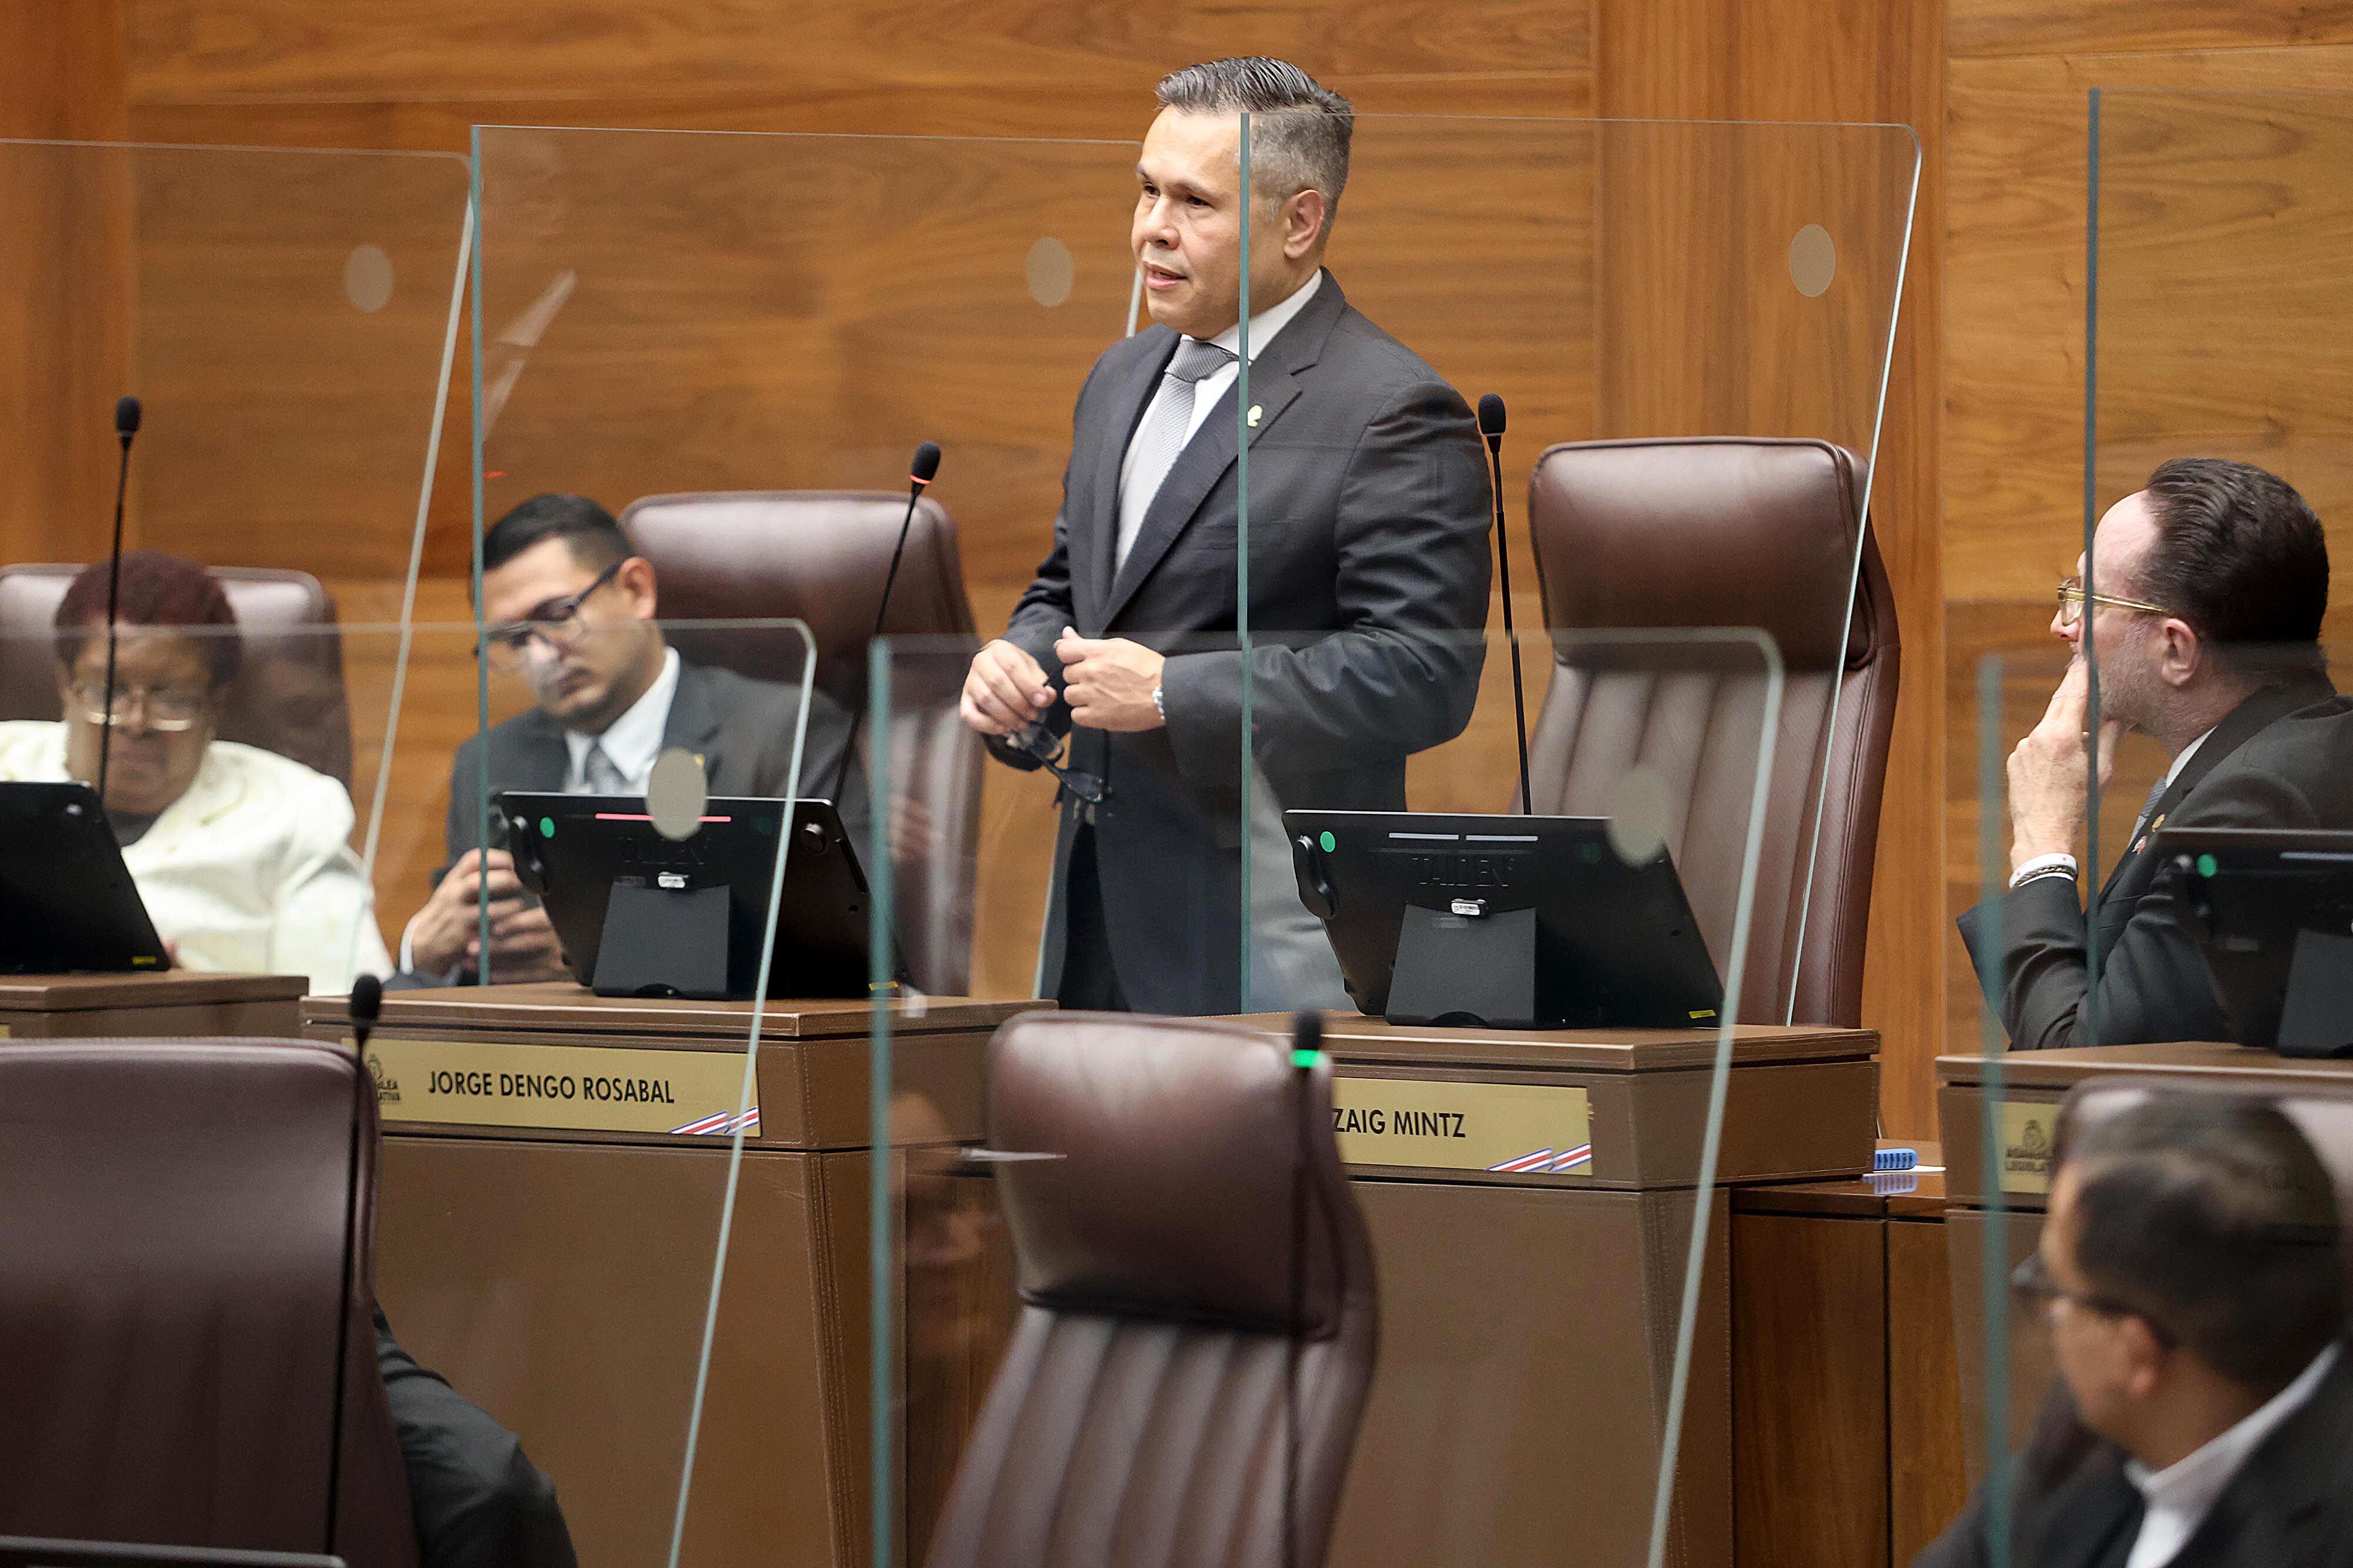 Jorge Dengo renunció a su cargo como diputado de la República para atender un tema de salud, según dijo.